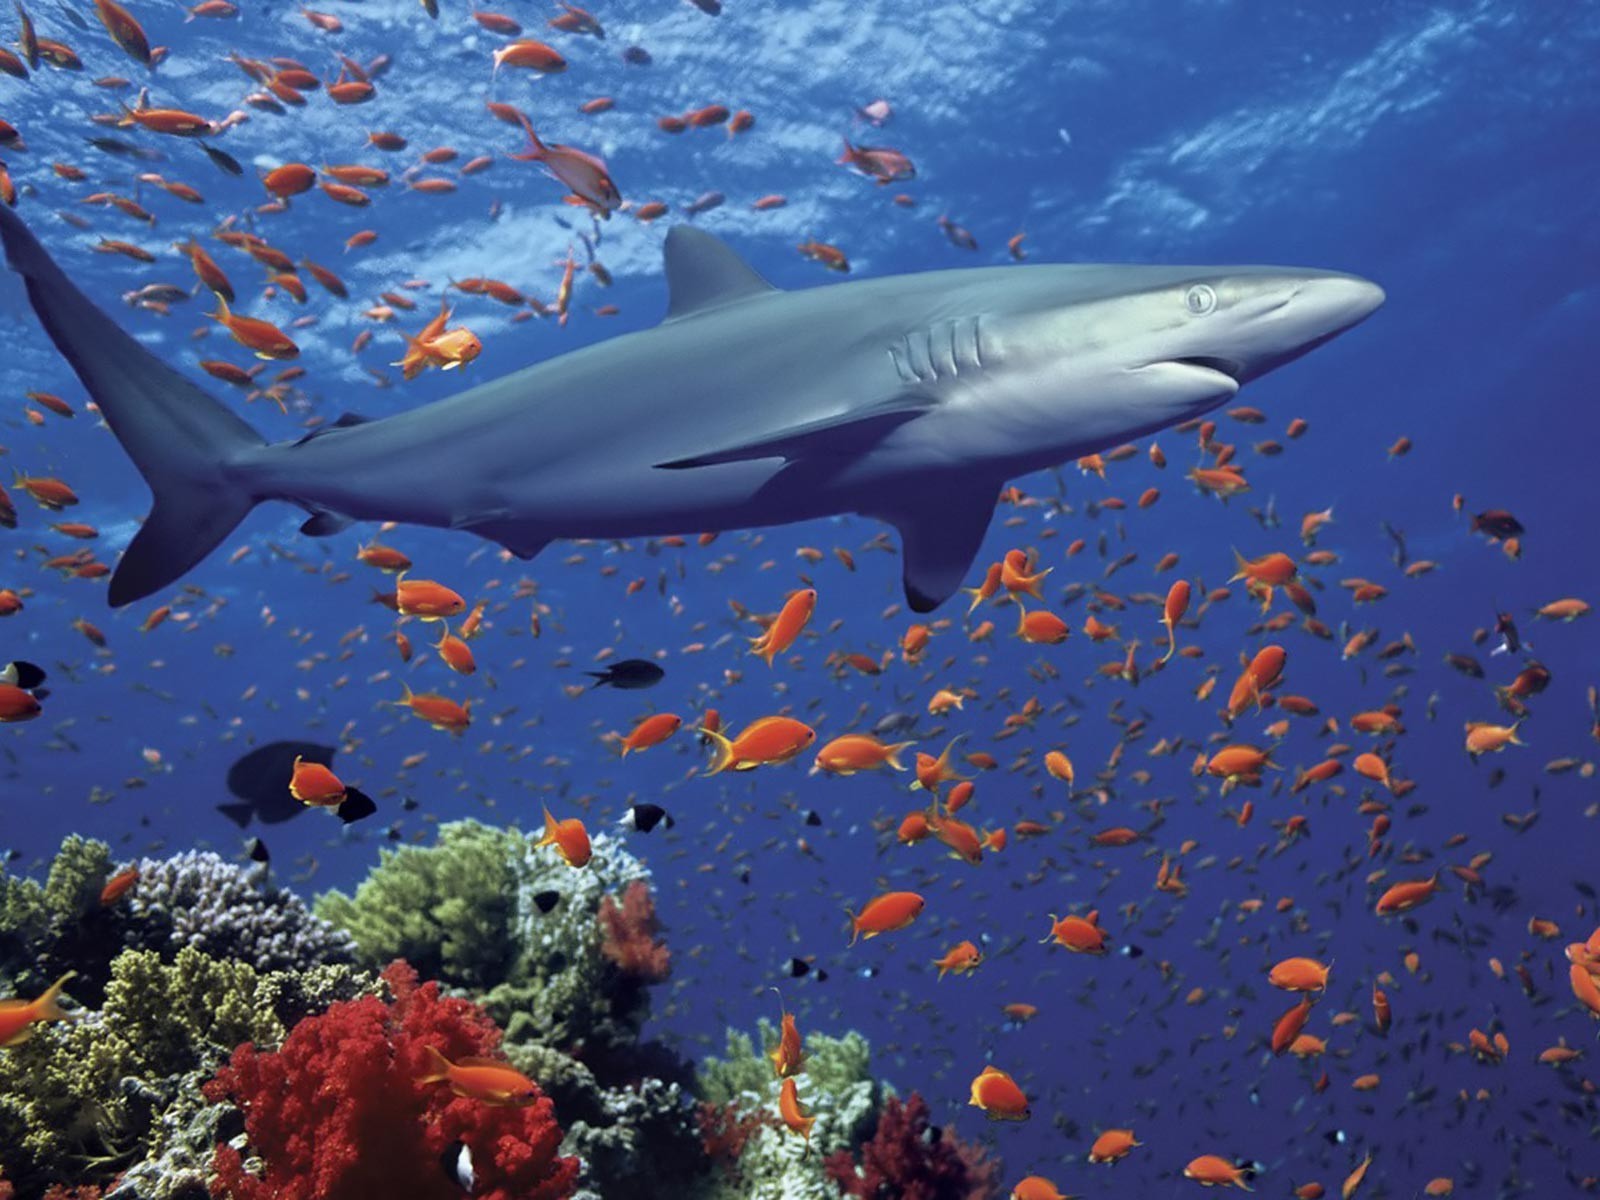 General 1600x1200 shark fish coral animals underwater